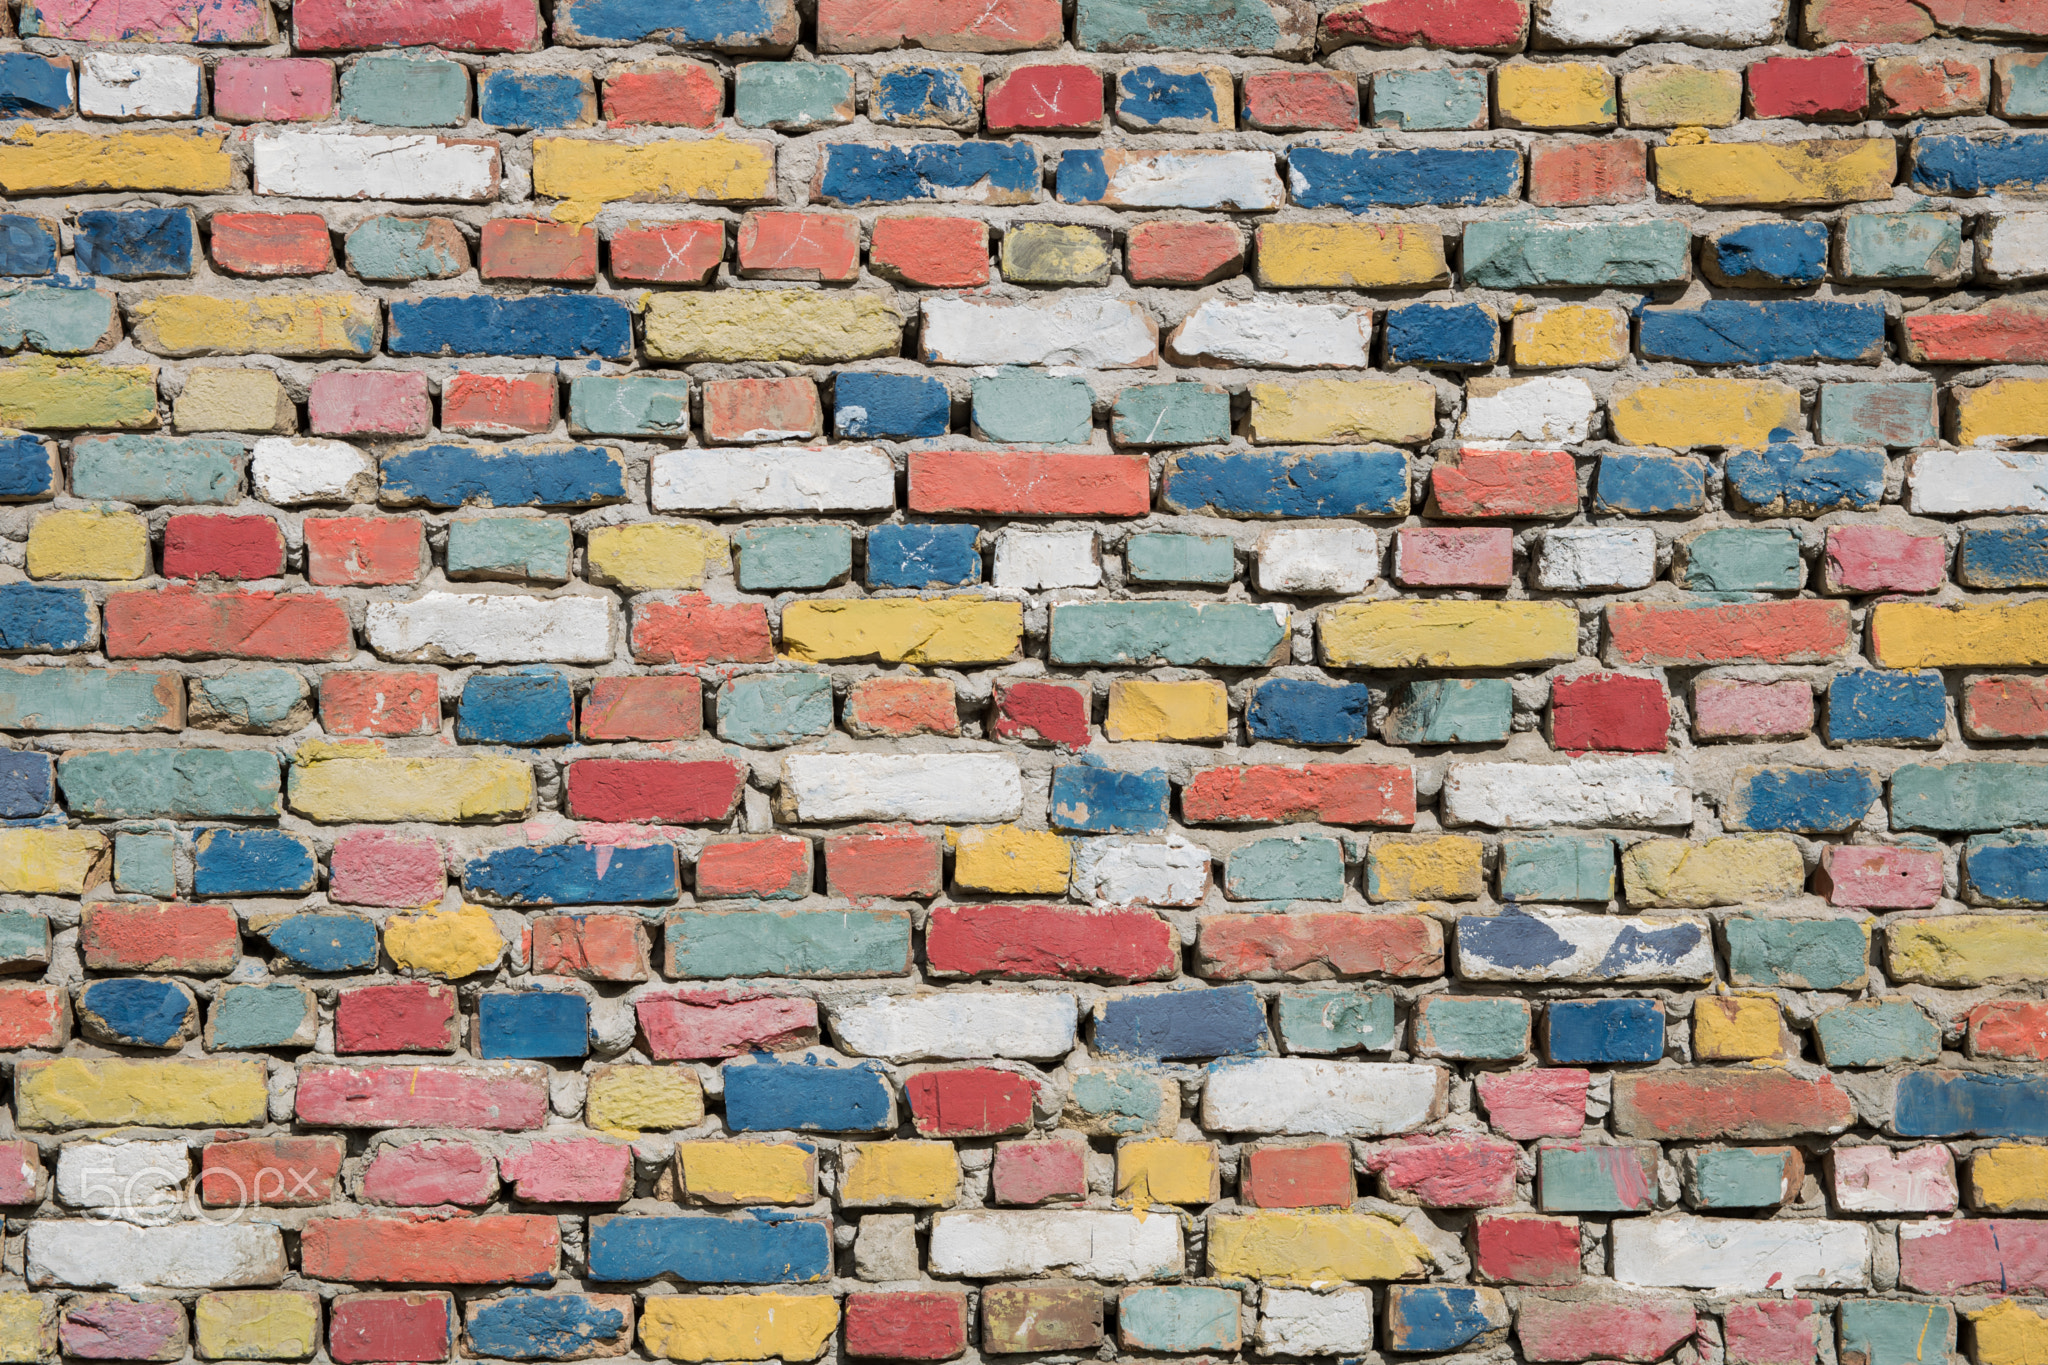 Colourful bricks texture